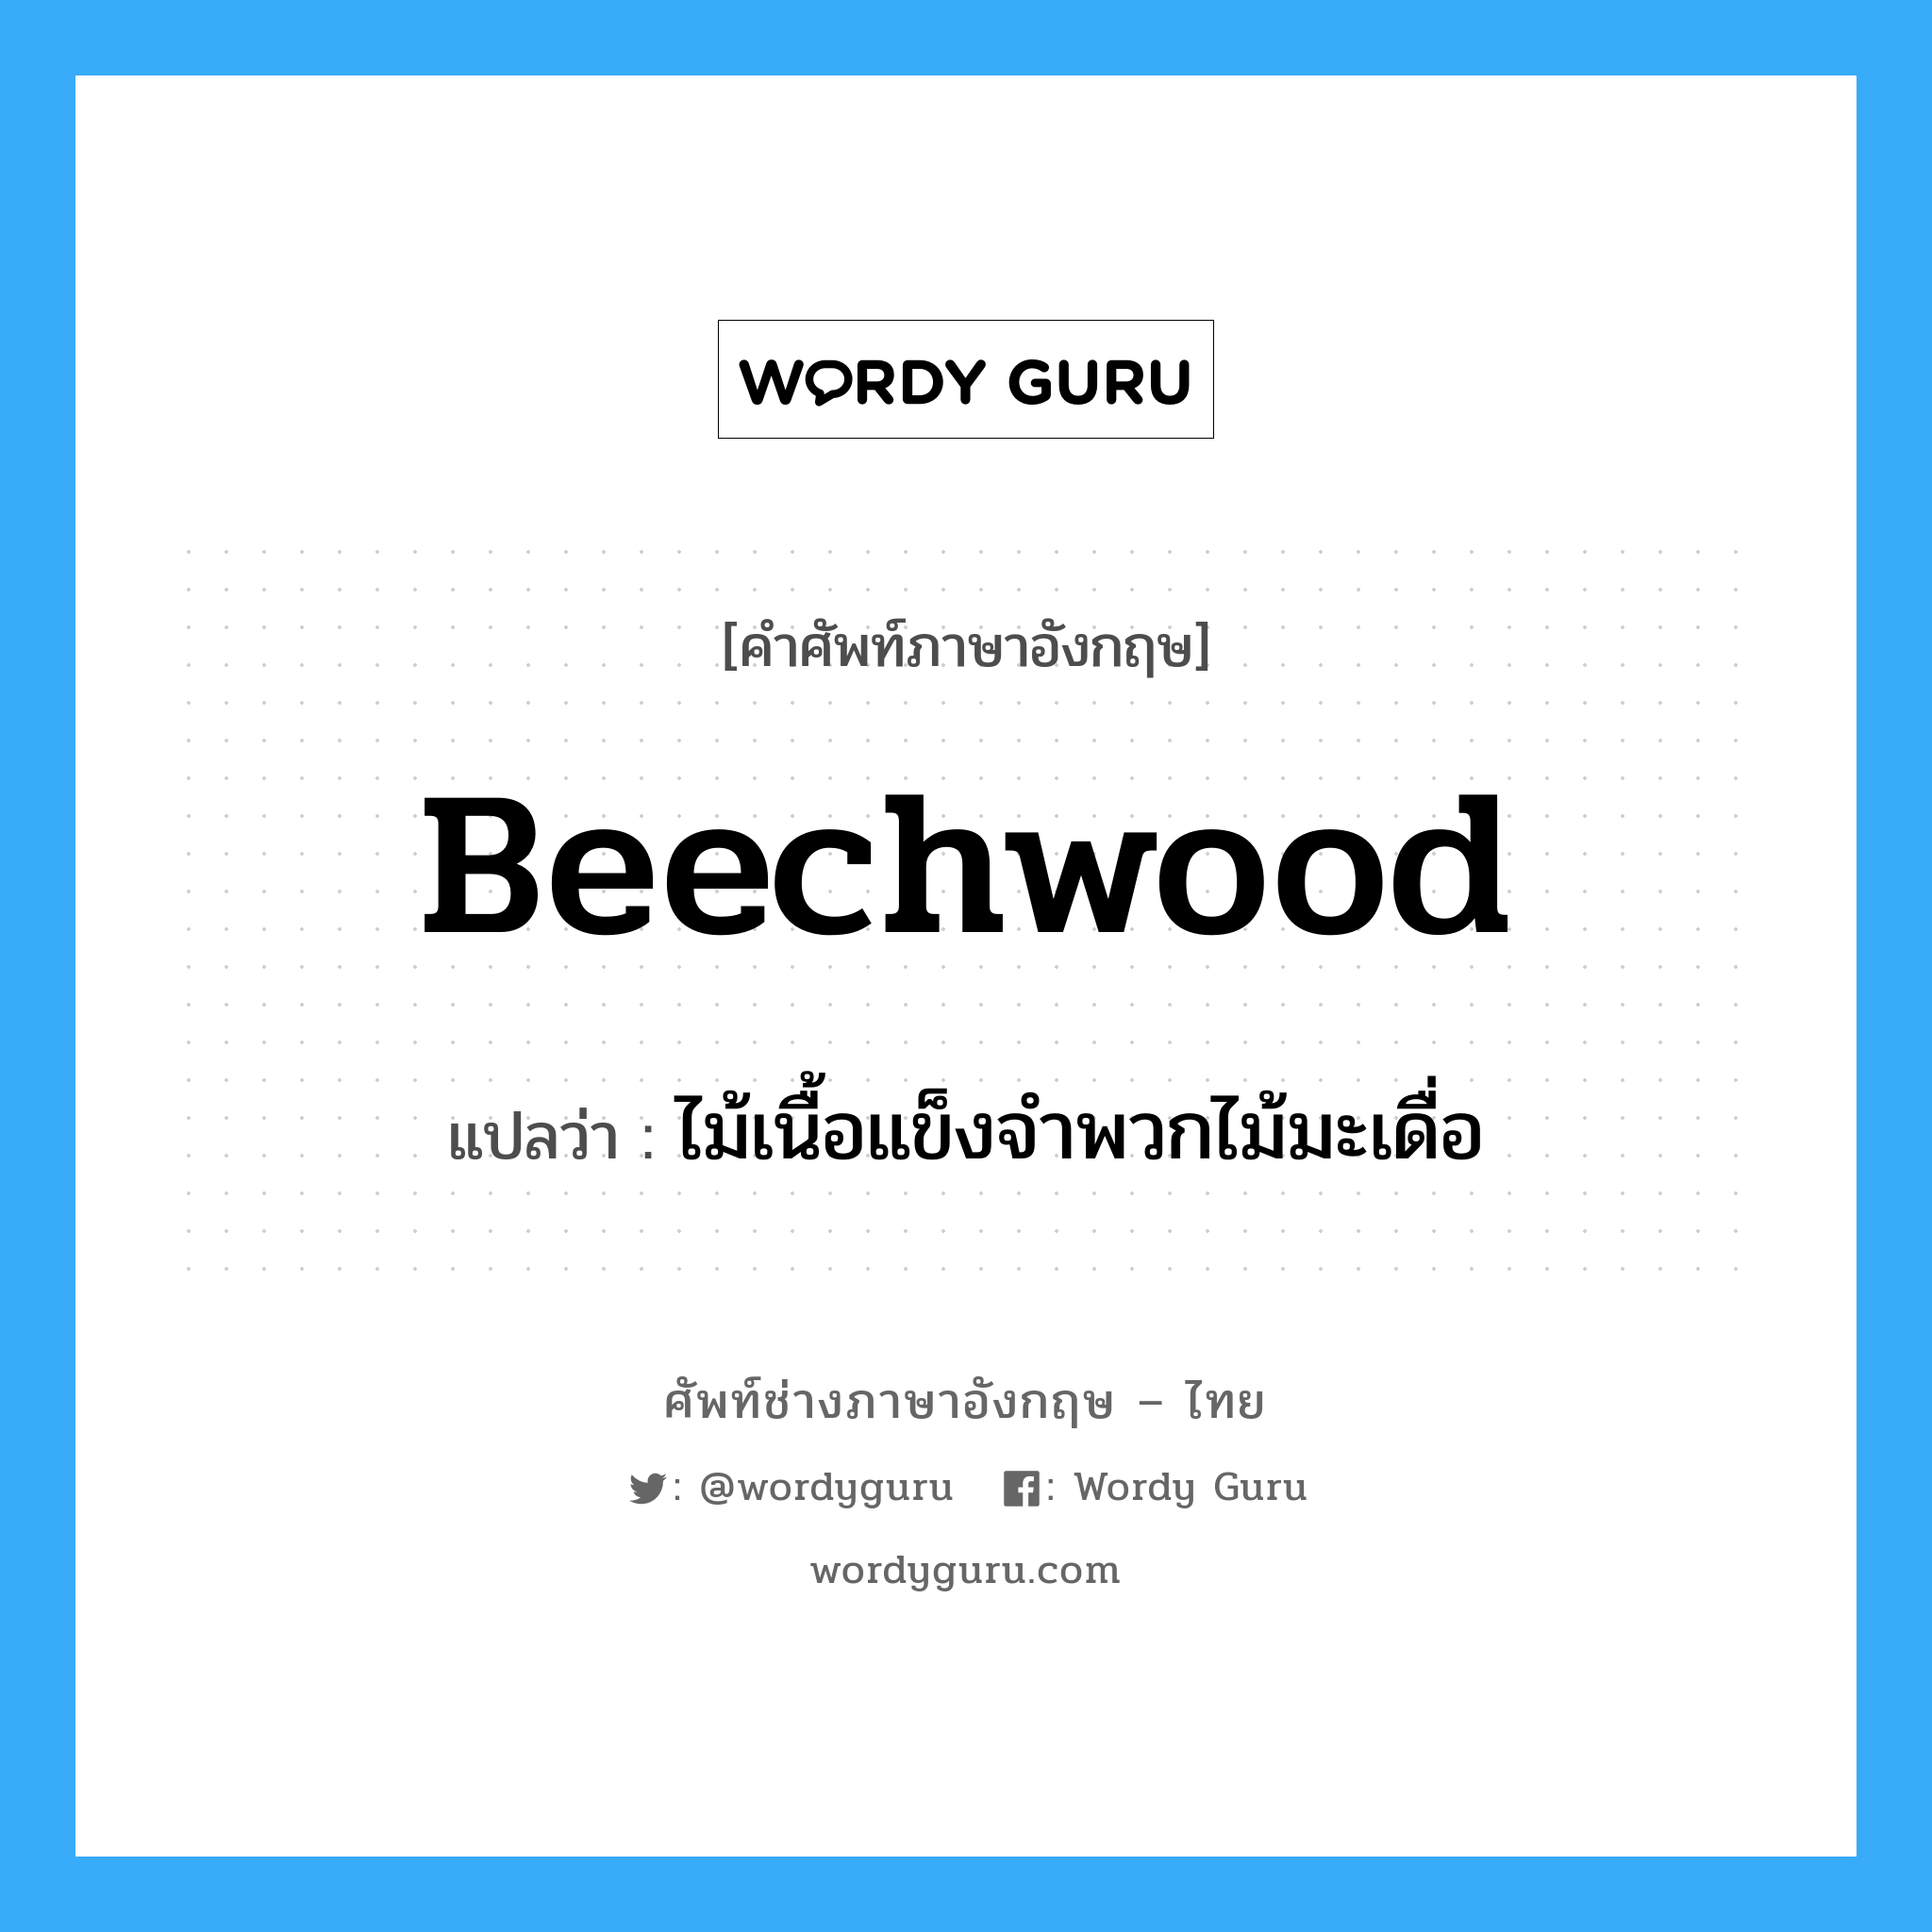 ไม้เนื้อแข็งจำพวกไม้มะเดื่อ ภาษาอังกฤษ?, คำศัพท์ช่างภาษาอังกฤษ - ไทย ไม้เนื้อแข็งจำพวกไม้มะเดื่อ คำศัพท์ภาษาอังกฤษ ไม้เนื้อแข็งจำพวกไม้มะเดื่อ แปลว่า beechwood